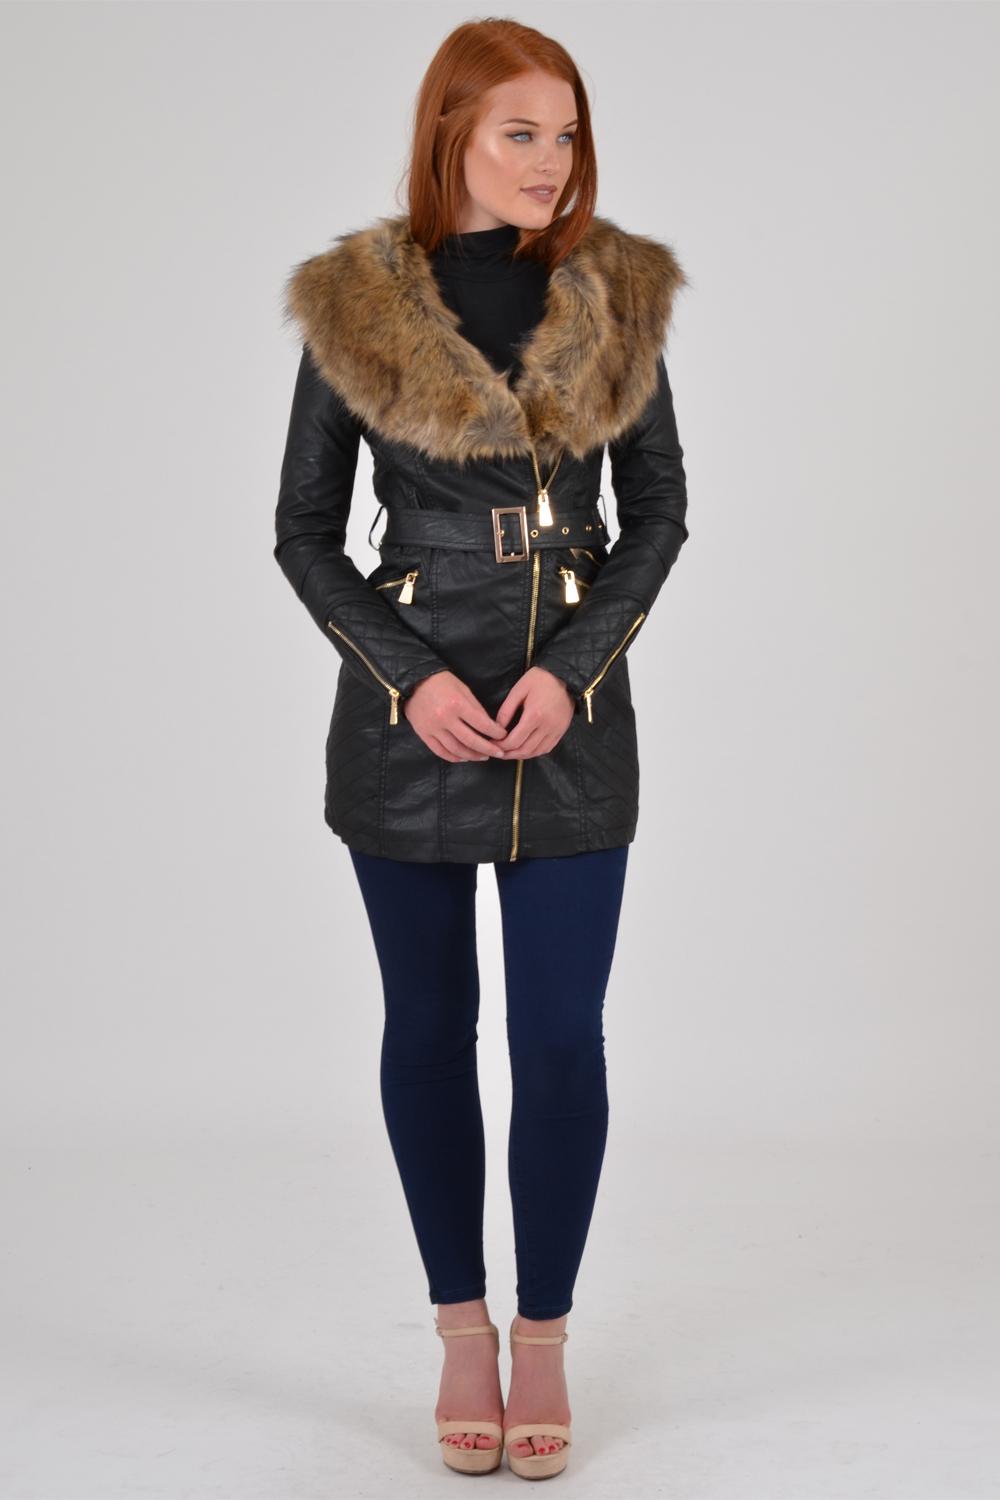 Fur Trim Biker Jacket Black/Beige Fur – First Avenue Fashions